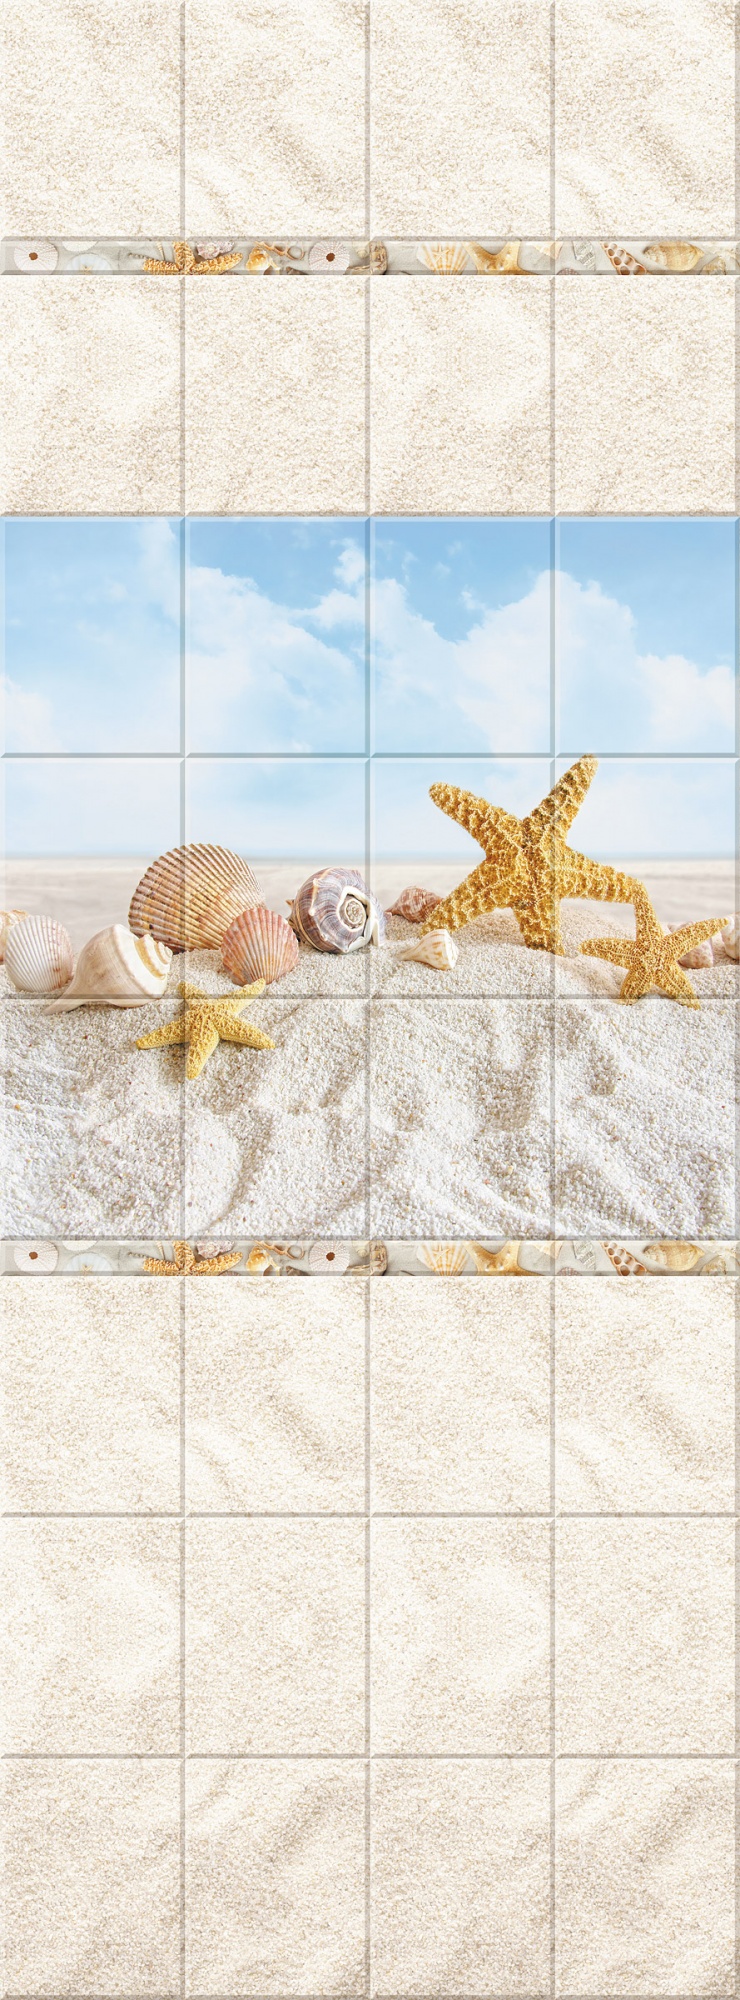 Панель ПВХ Песчаный пляж